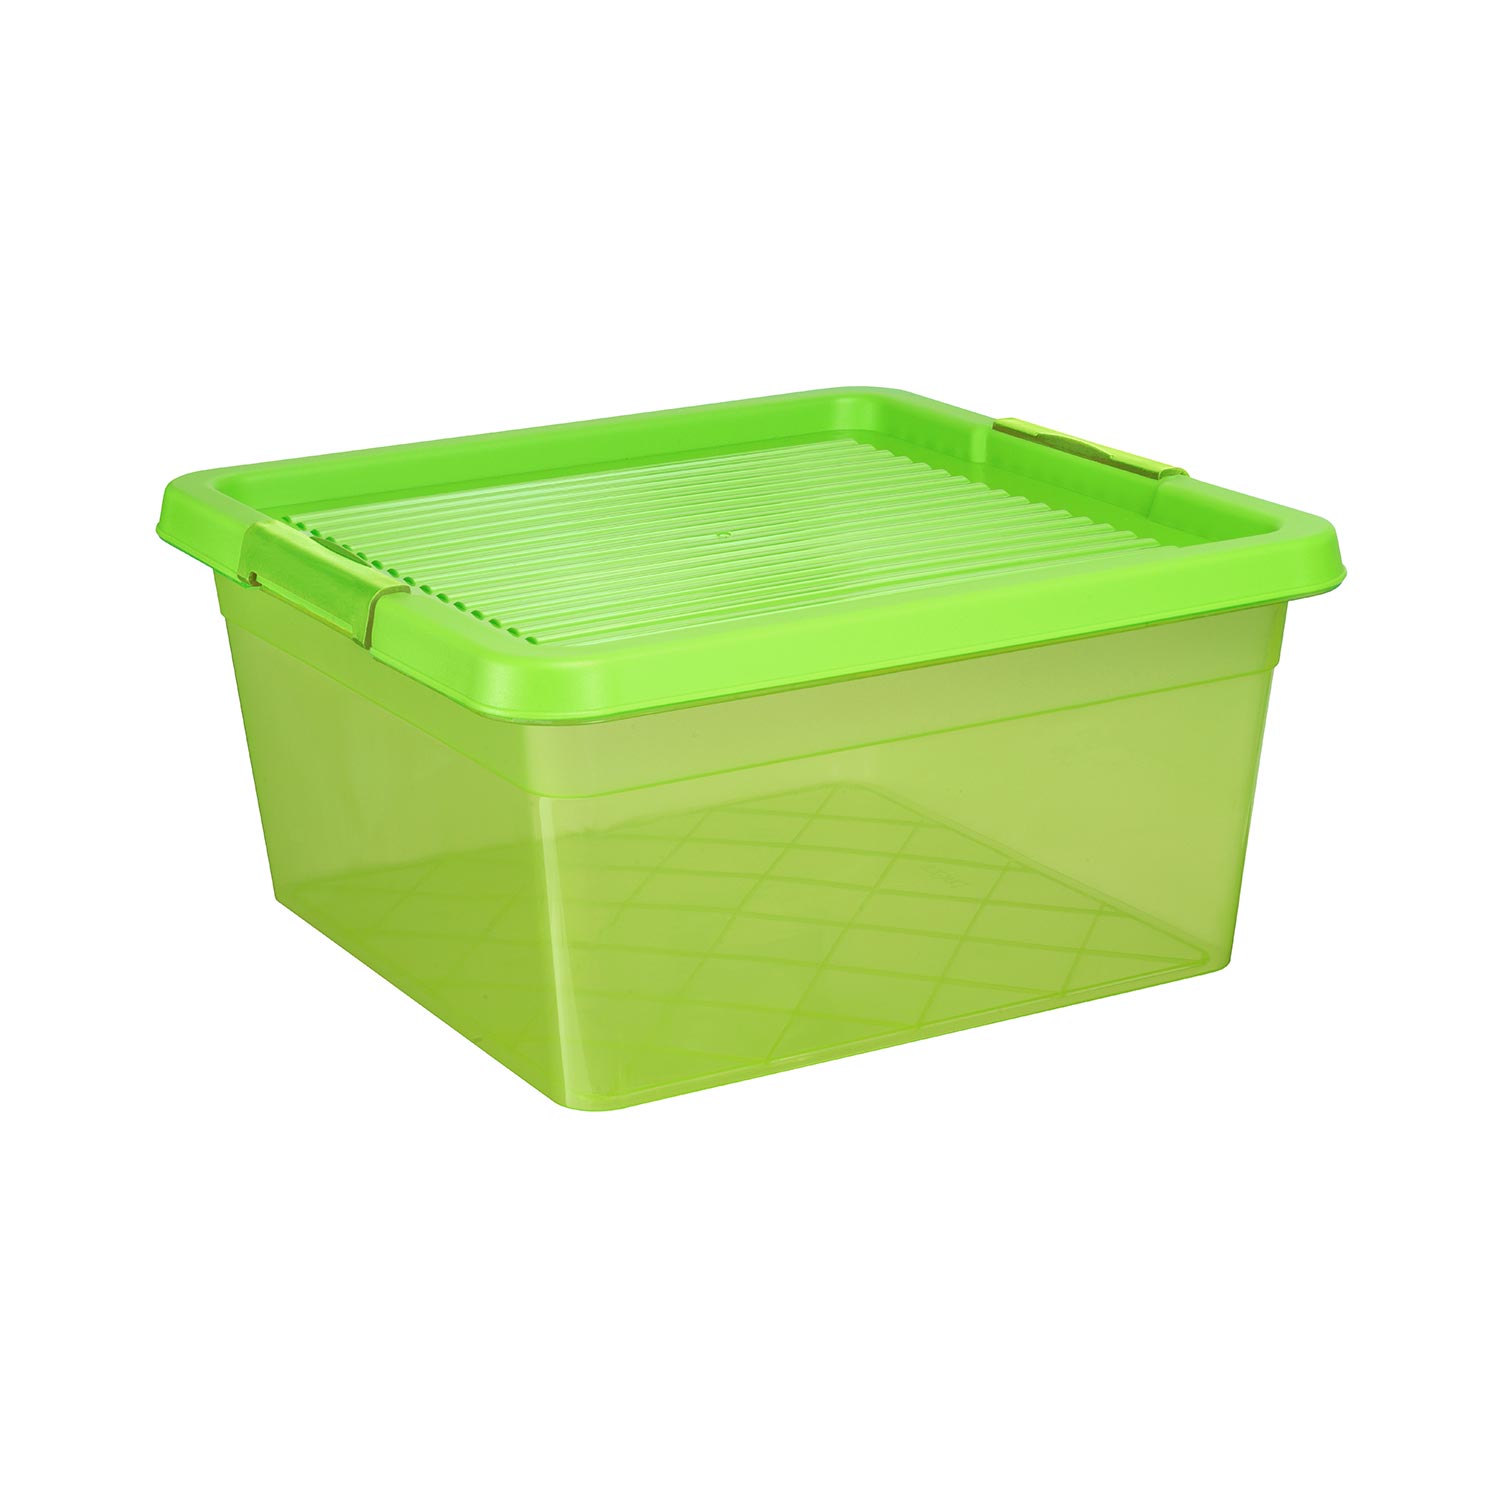 Aufbewahrungsbox "Box One" 20 L in transparenten grün, Kunststoffbox